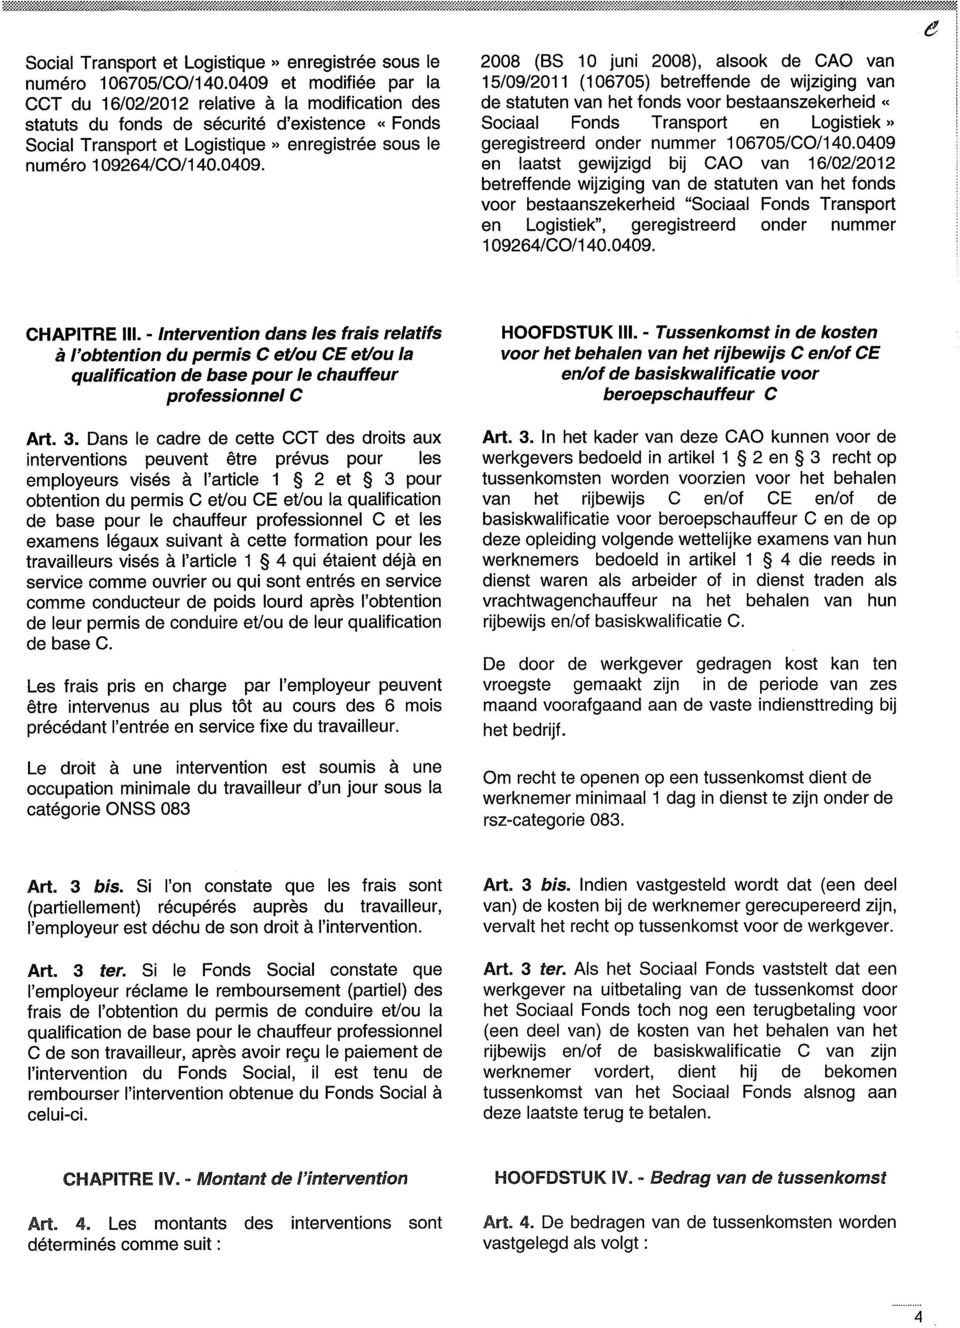 2008 (BS 10 juni 2008), alsook de CAO van 15/09/2011 (106705) betreffende de wijziging van de statuten van het fonds voor bestaanszekerheid «Sociaal Fonds Transport en Logistiek» geregistreerd onder